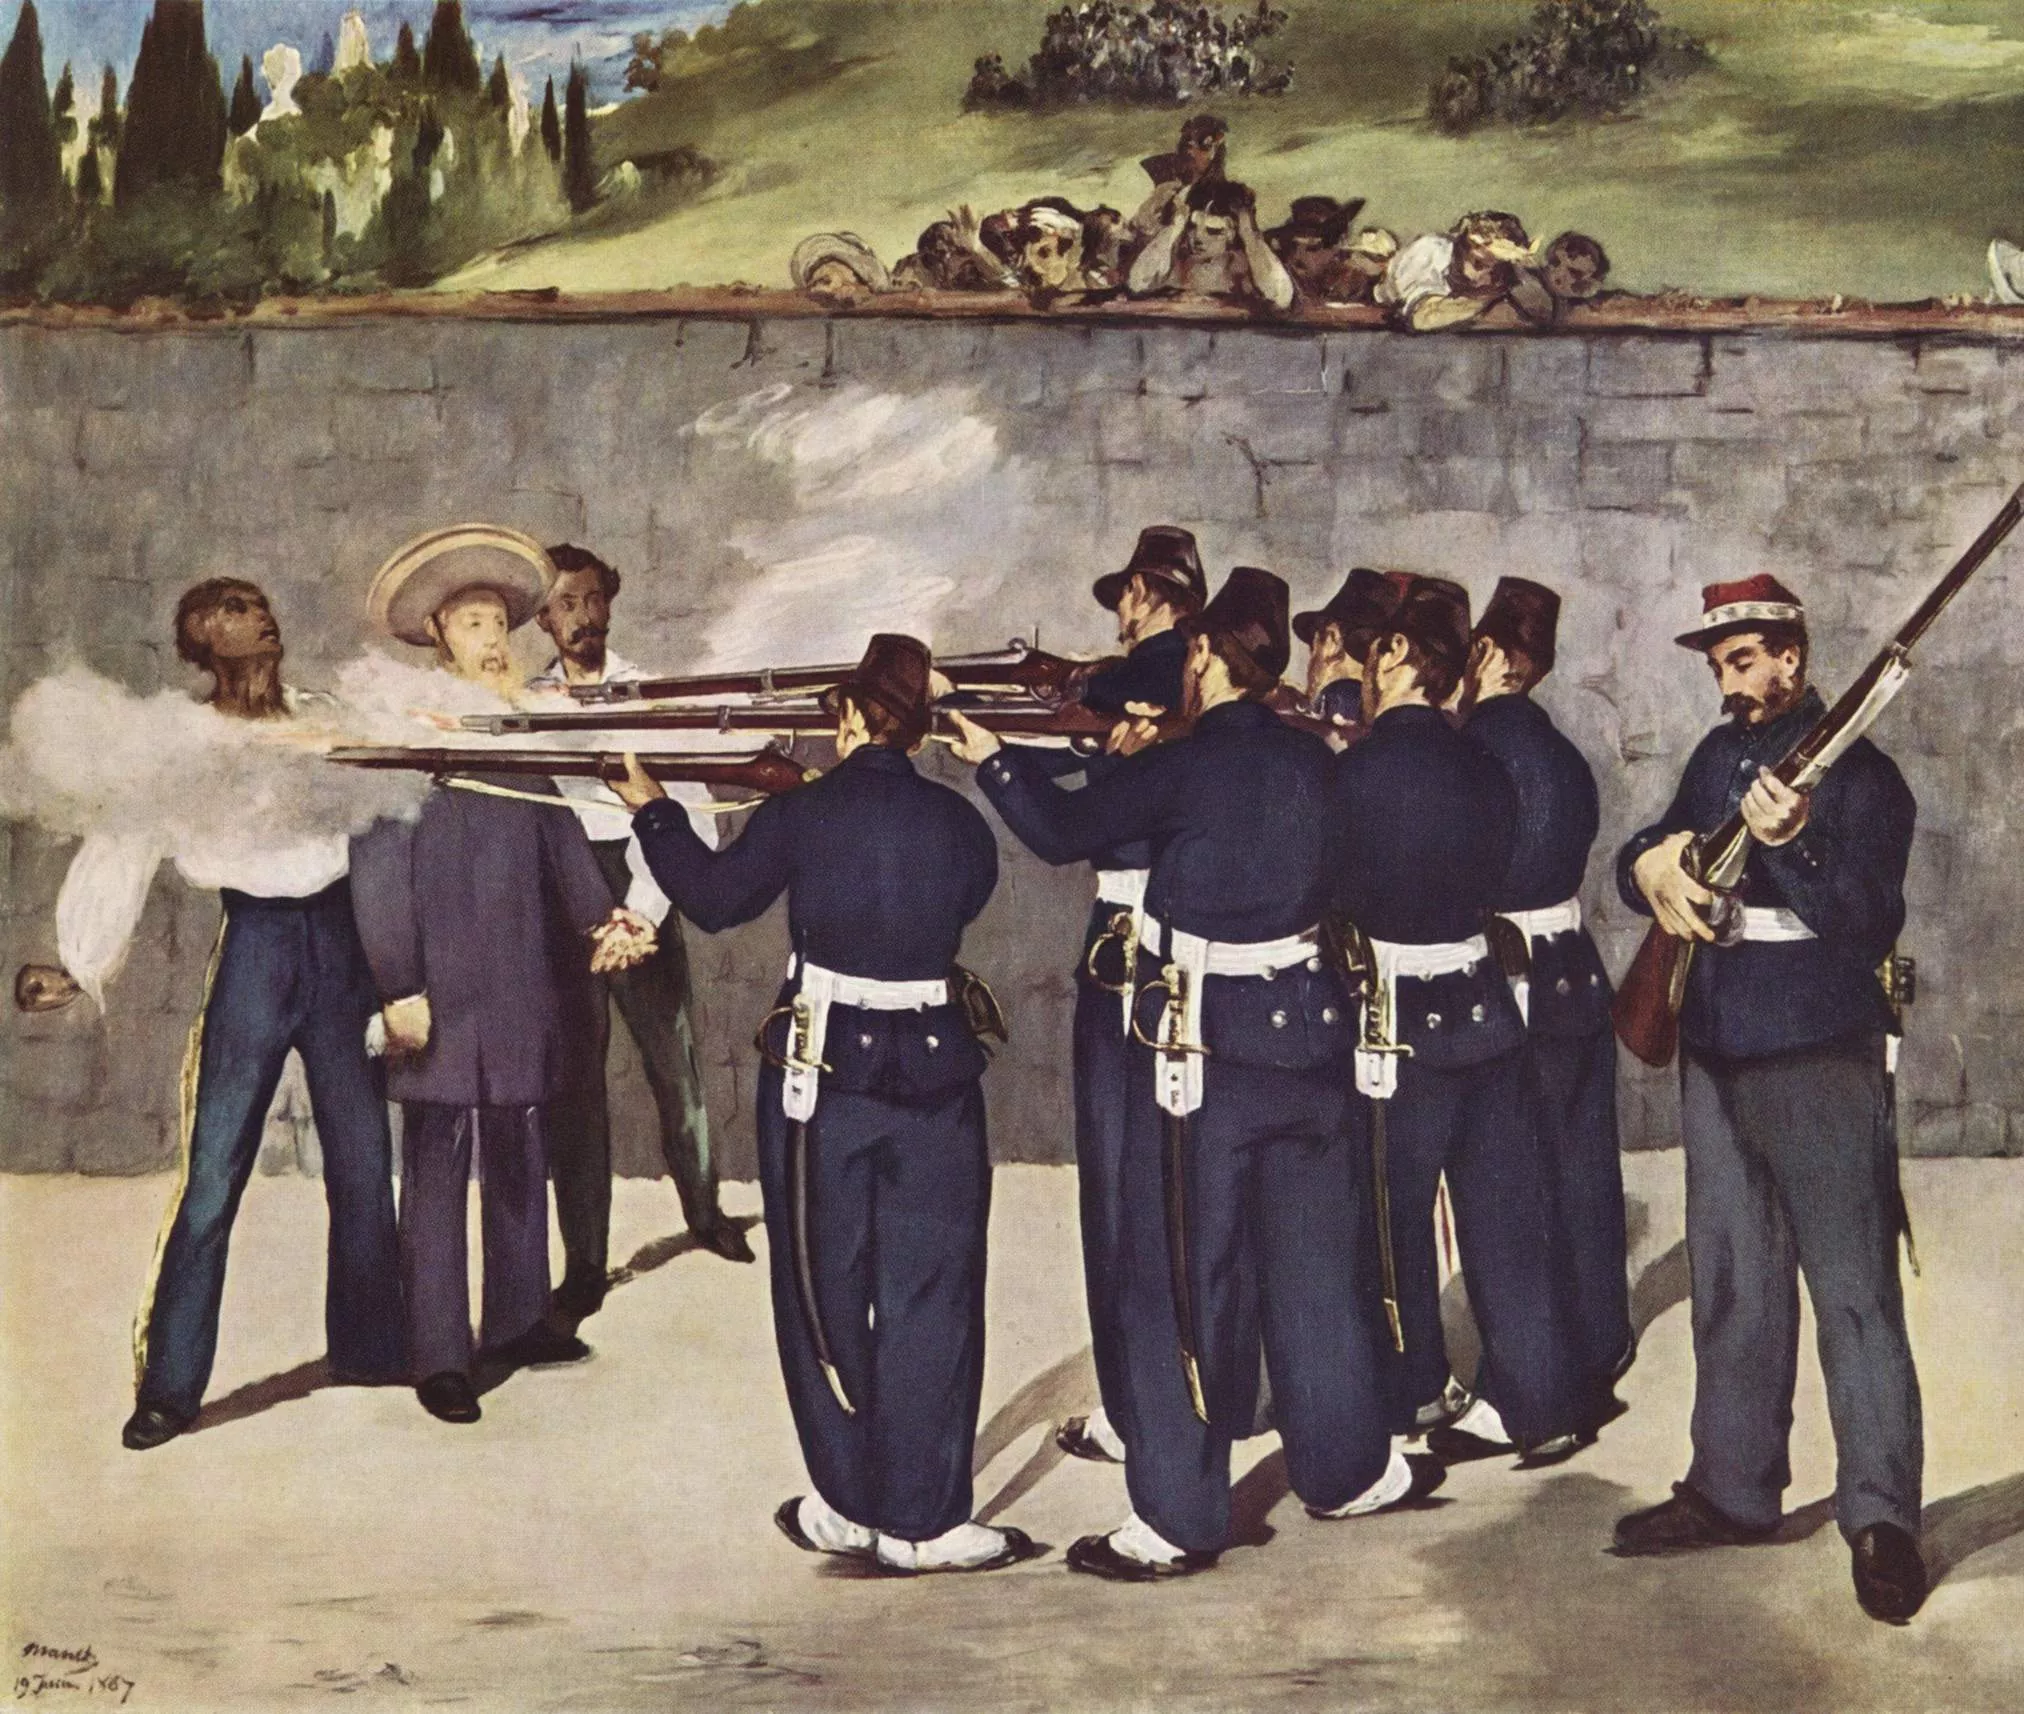 'L'execució de l'emperador Maximilià de Mèxic', de Édouard Manet